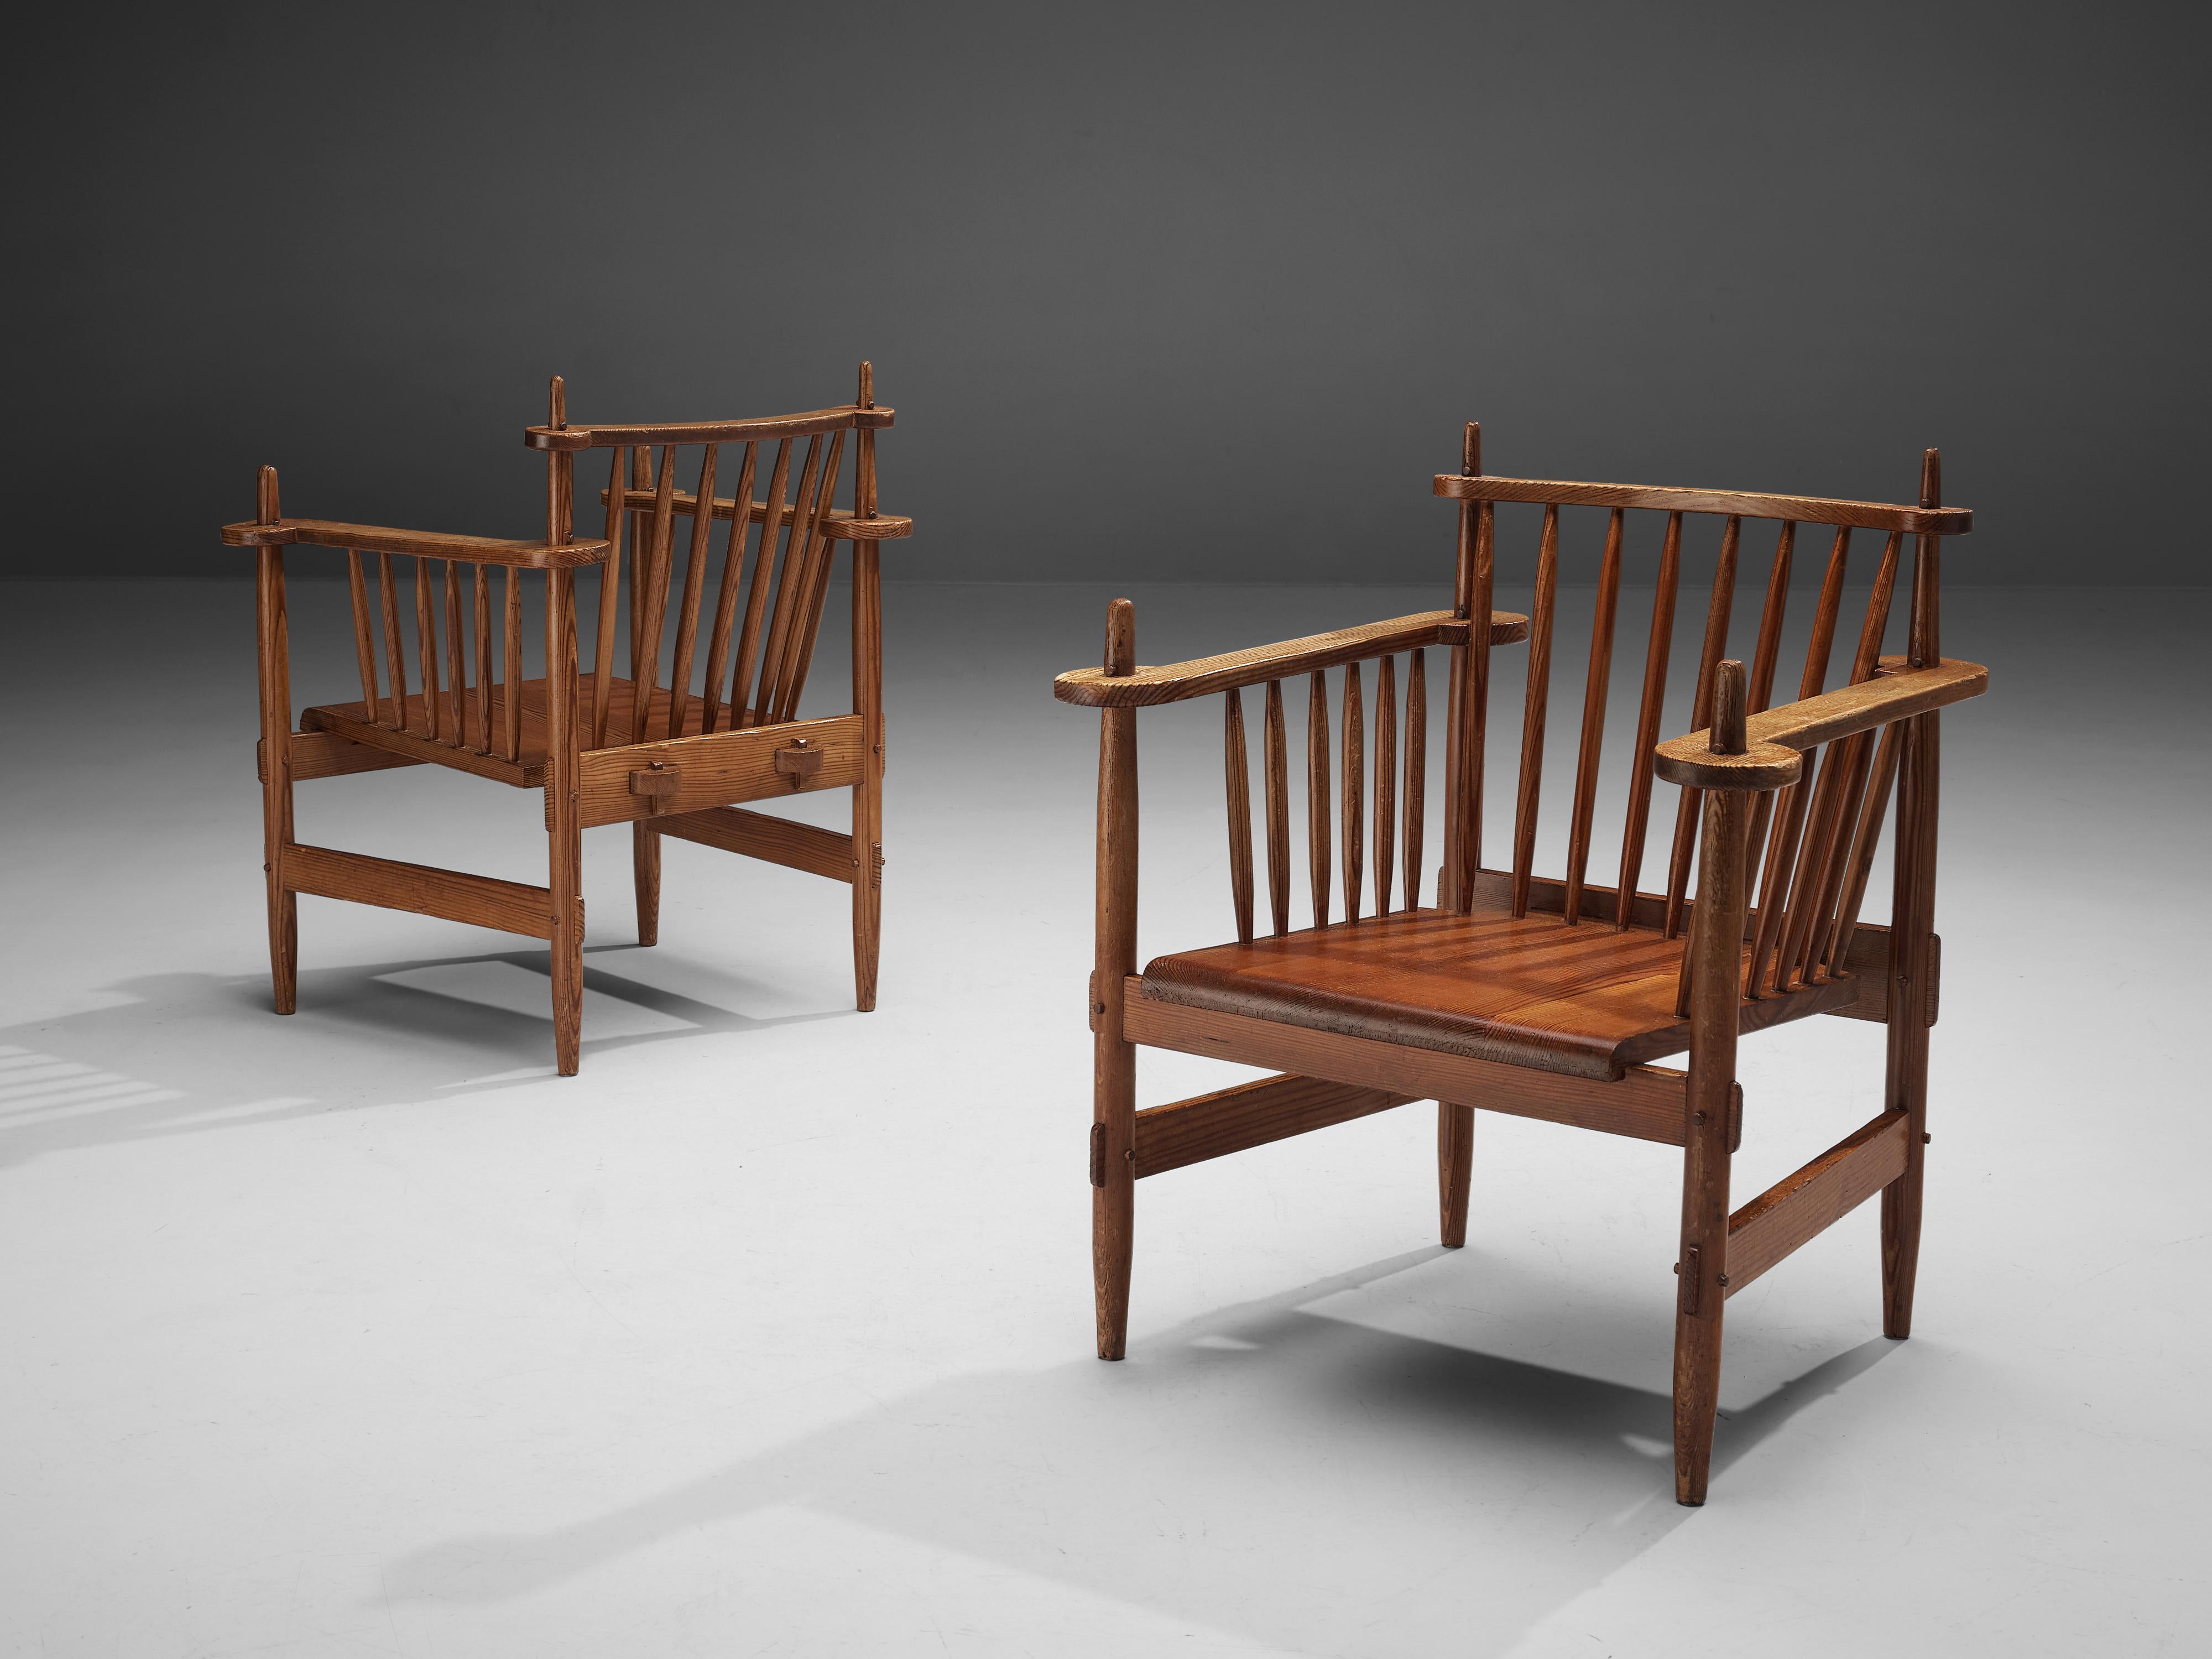 Paire de fauteuils, pin, Pays-Bas, années 1950

Ces chaises d'origine hollandaise sont construites avec beaucoup d'habileté, et incarnent un aspect rustique mais très moderne. Le cadre robuste se compose de plusieurs fuseaux de forme ronde qui